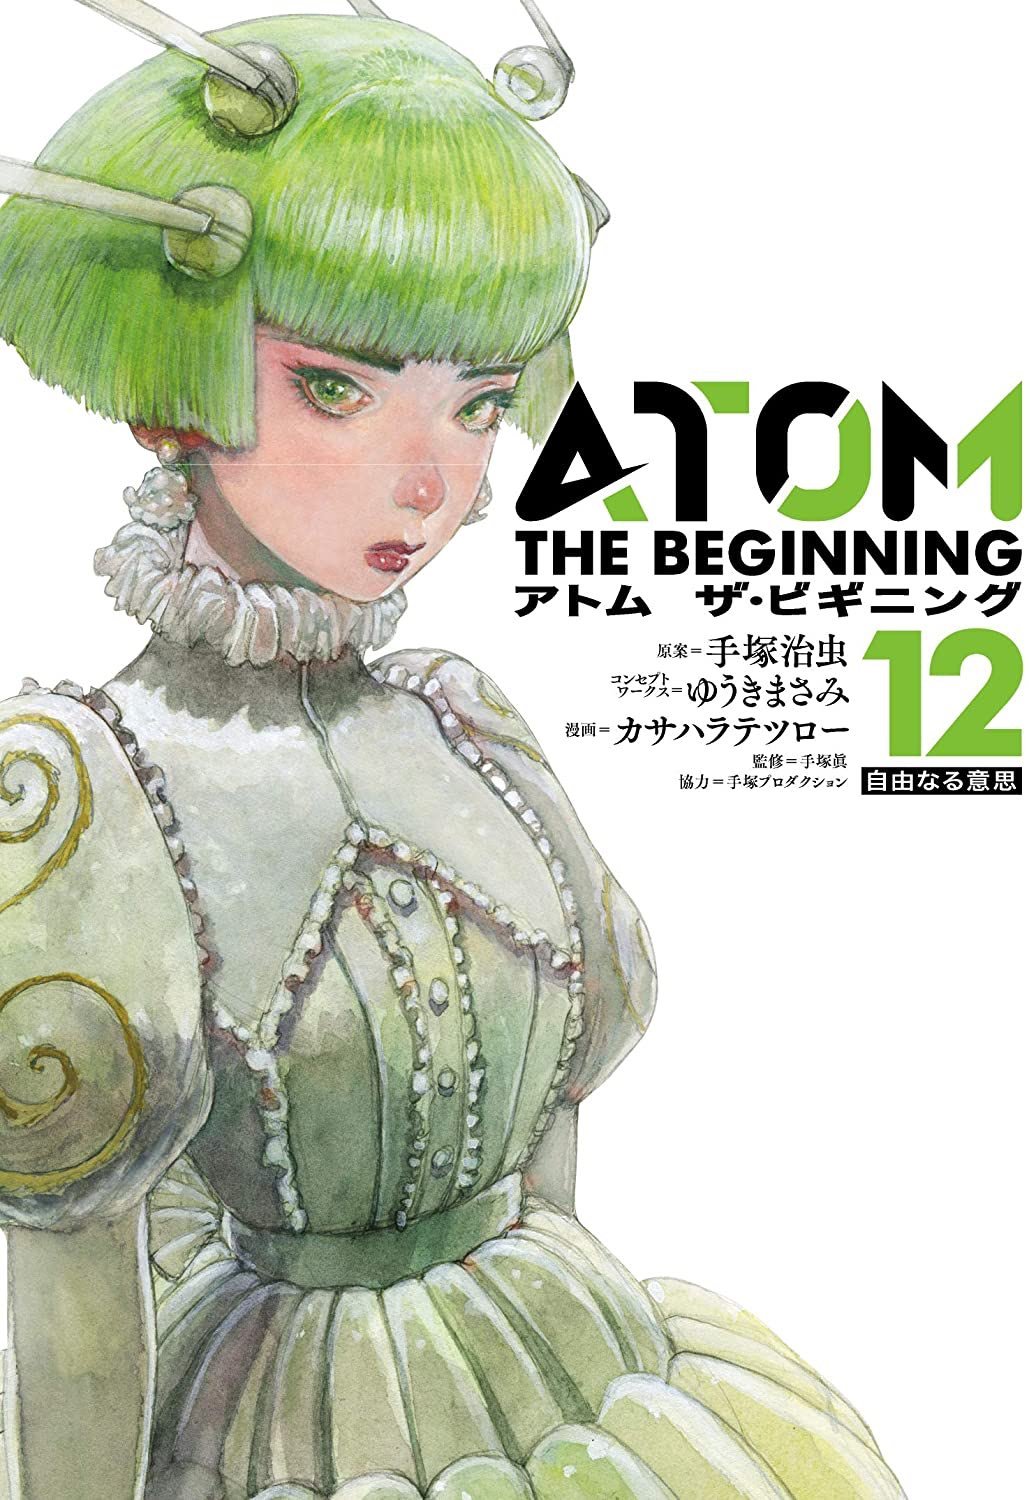 Atom - The Beginning - MangaDex